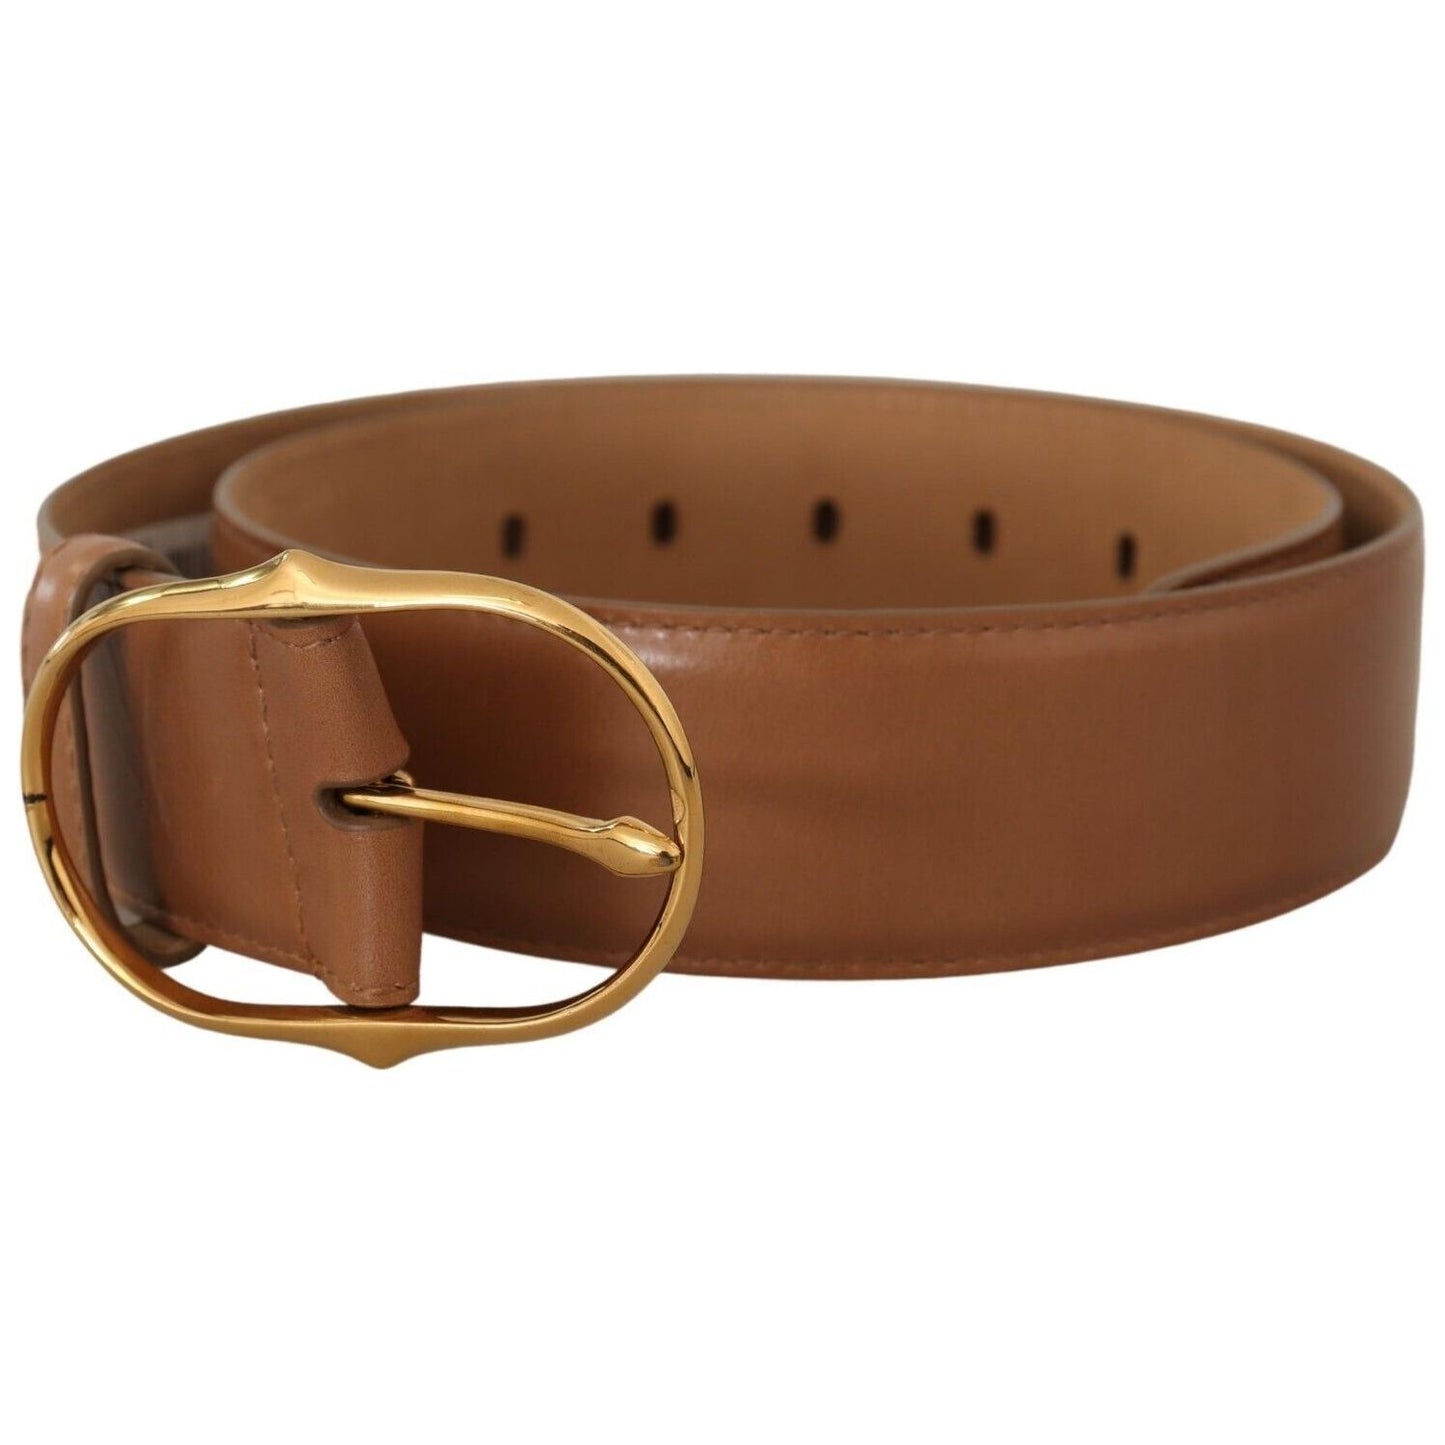 Dolce & Gabbana Elegant Gold Buckle Leather Belt brown-leather-gold-metal-oval-buckle-belt s-l1600-2-235-2b537511-3cd.jpg